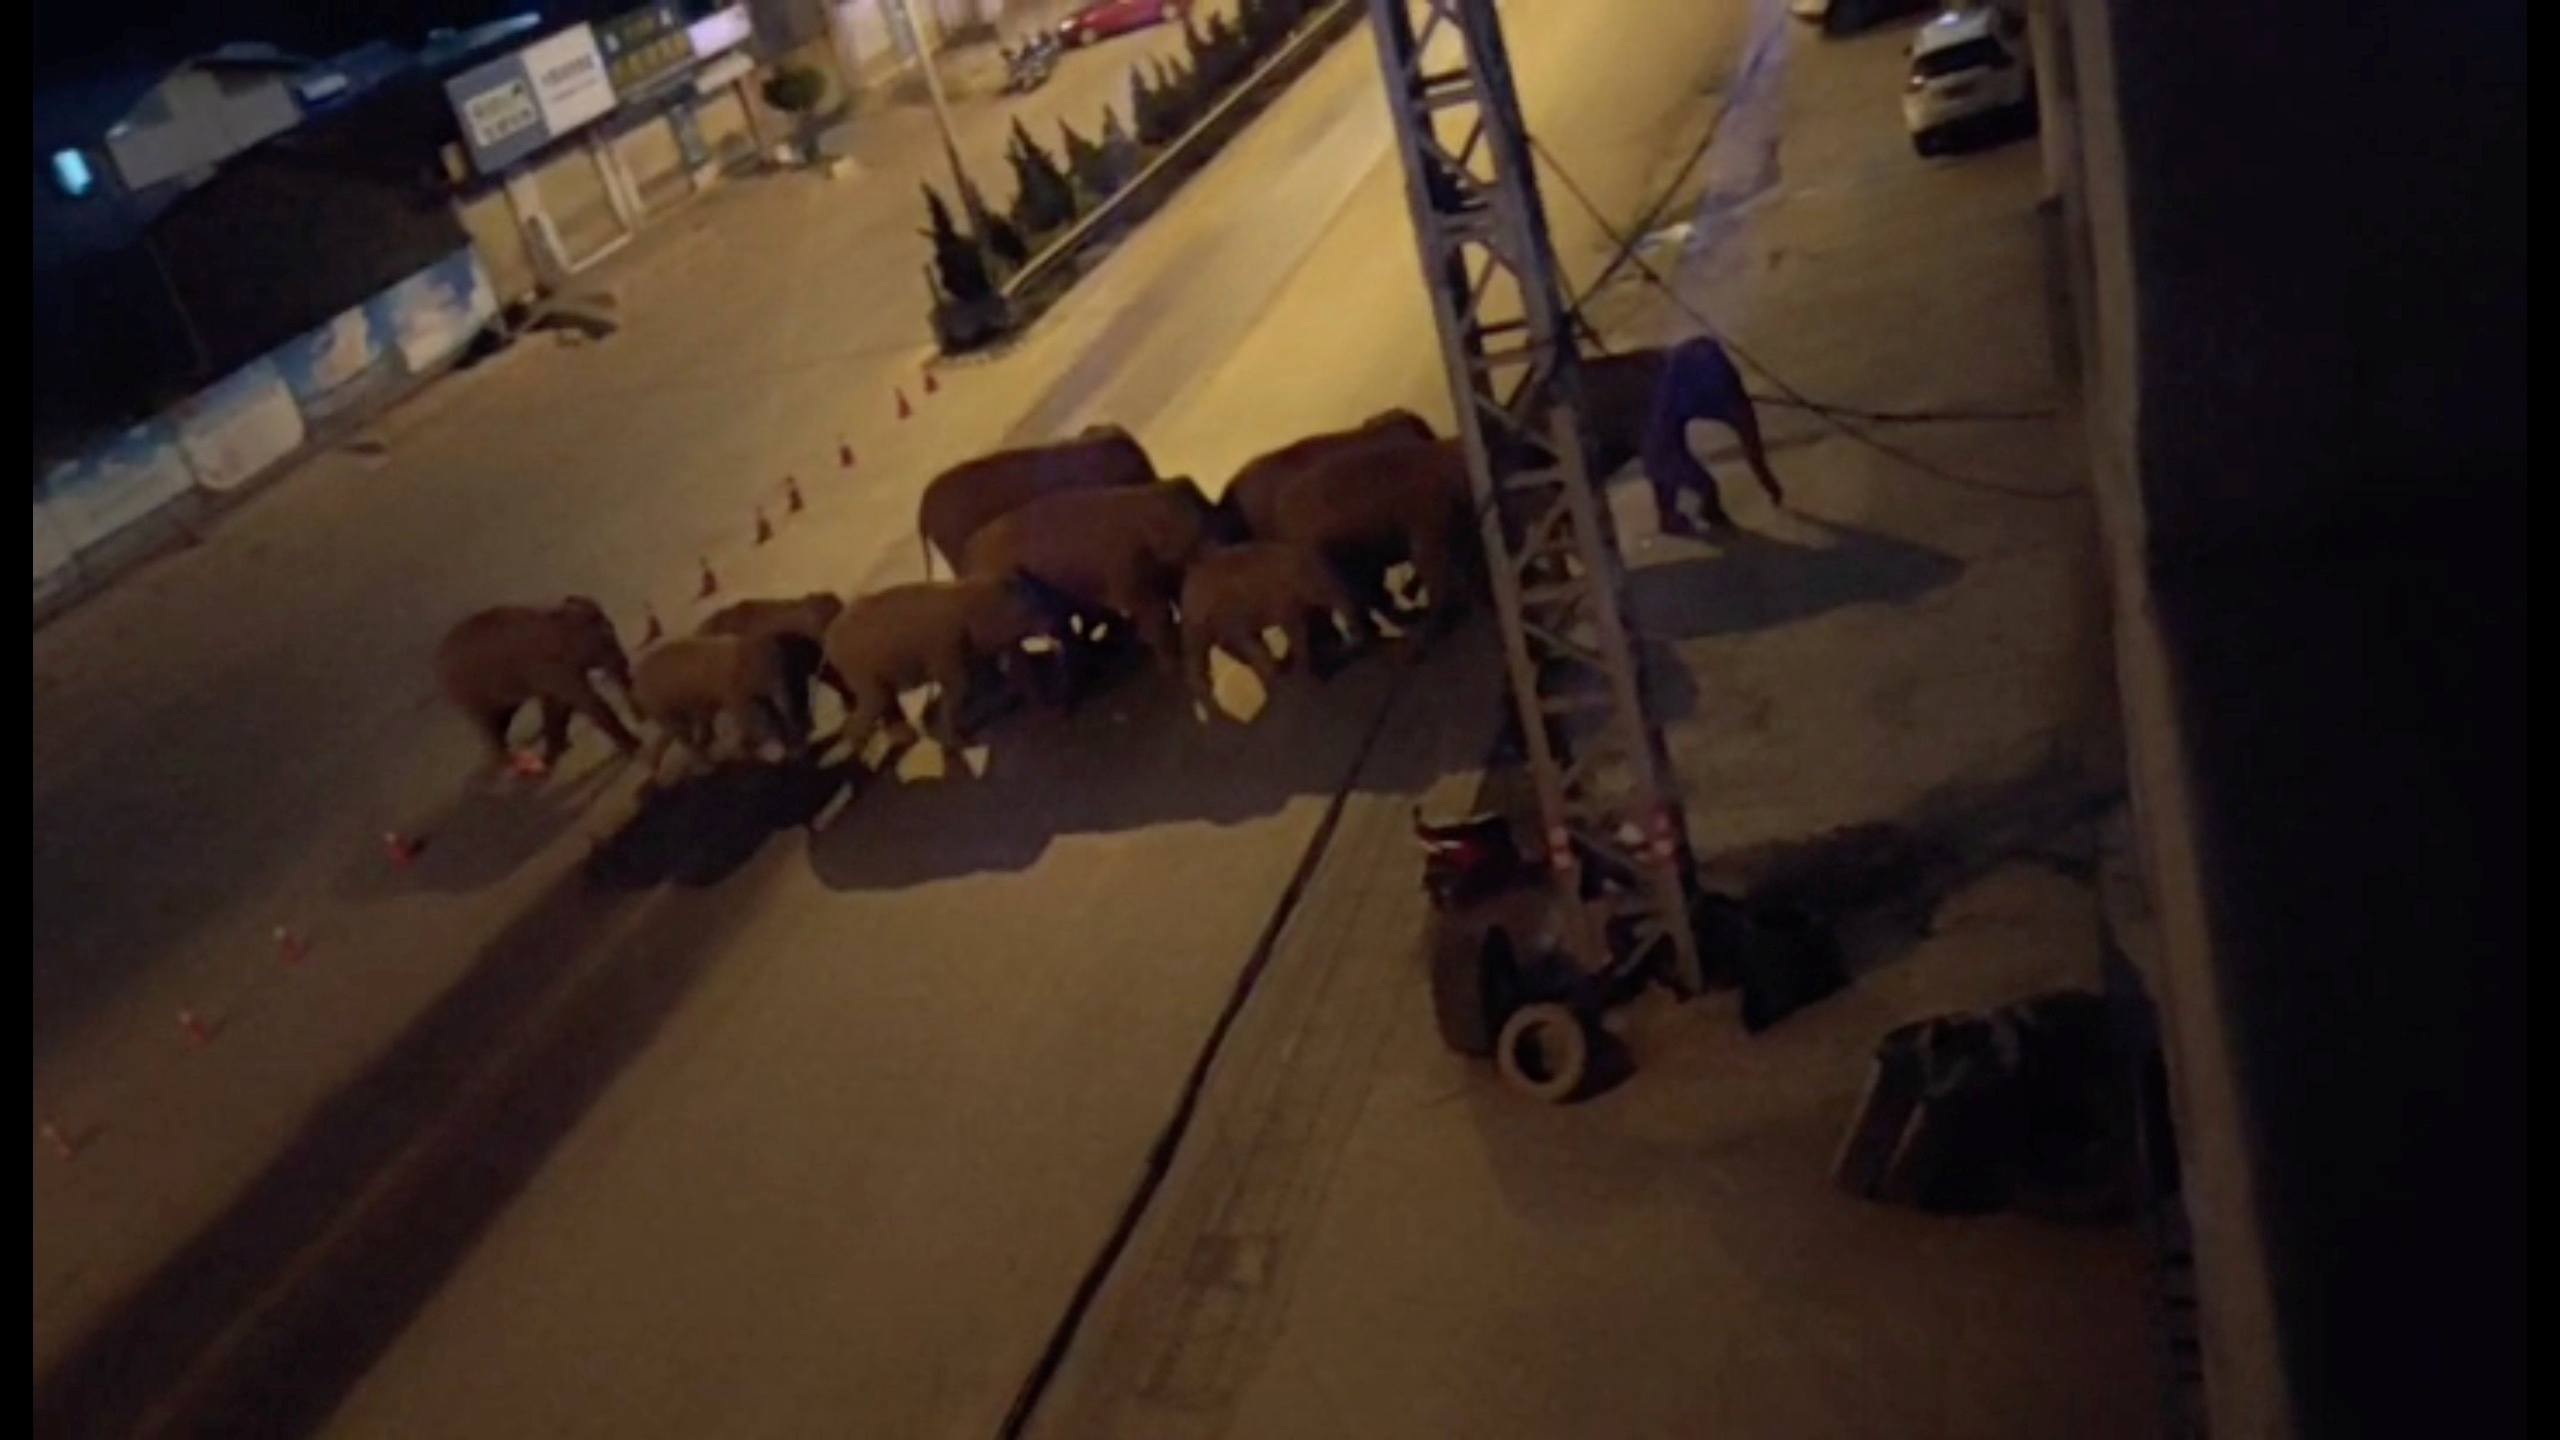 A herd of elephants walk along a road in Eshan, Yunan, China